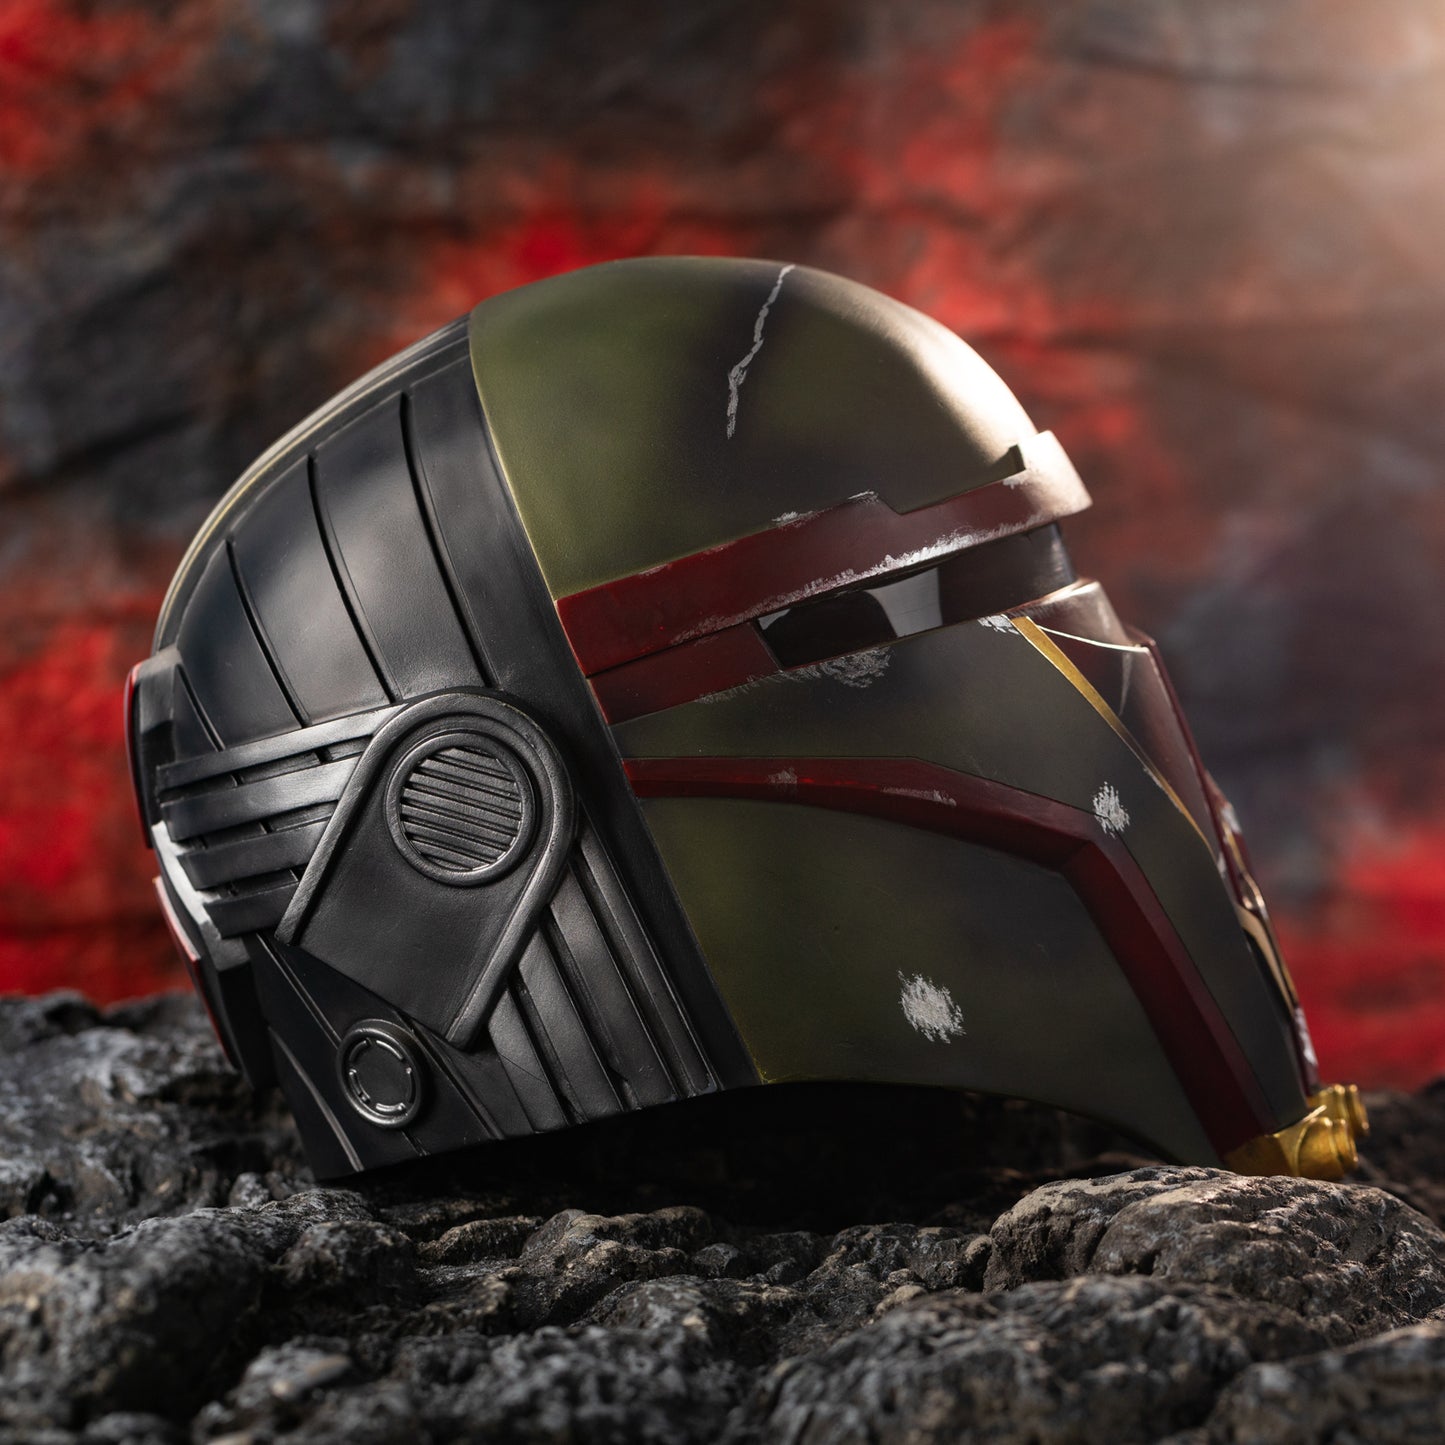 【Neu eingetroffen】Xcoser Star Wars: Knights of the Old Republic Remastered Darth Revan Maske SW Helm Cosplay Halloween